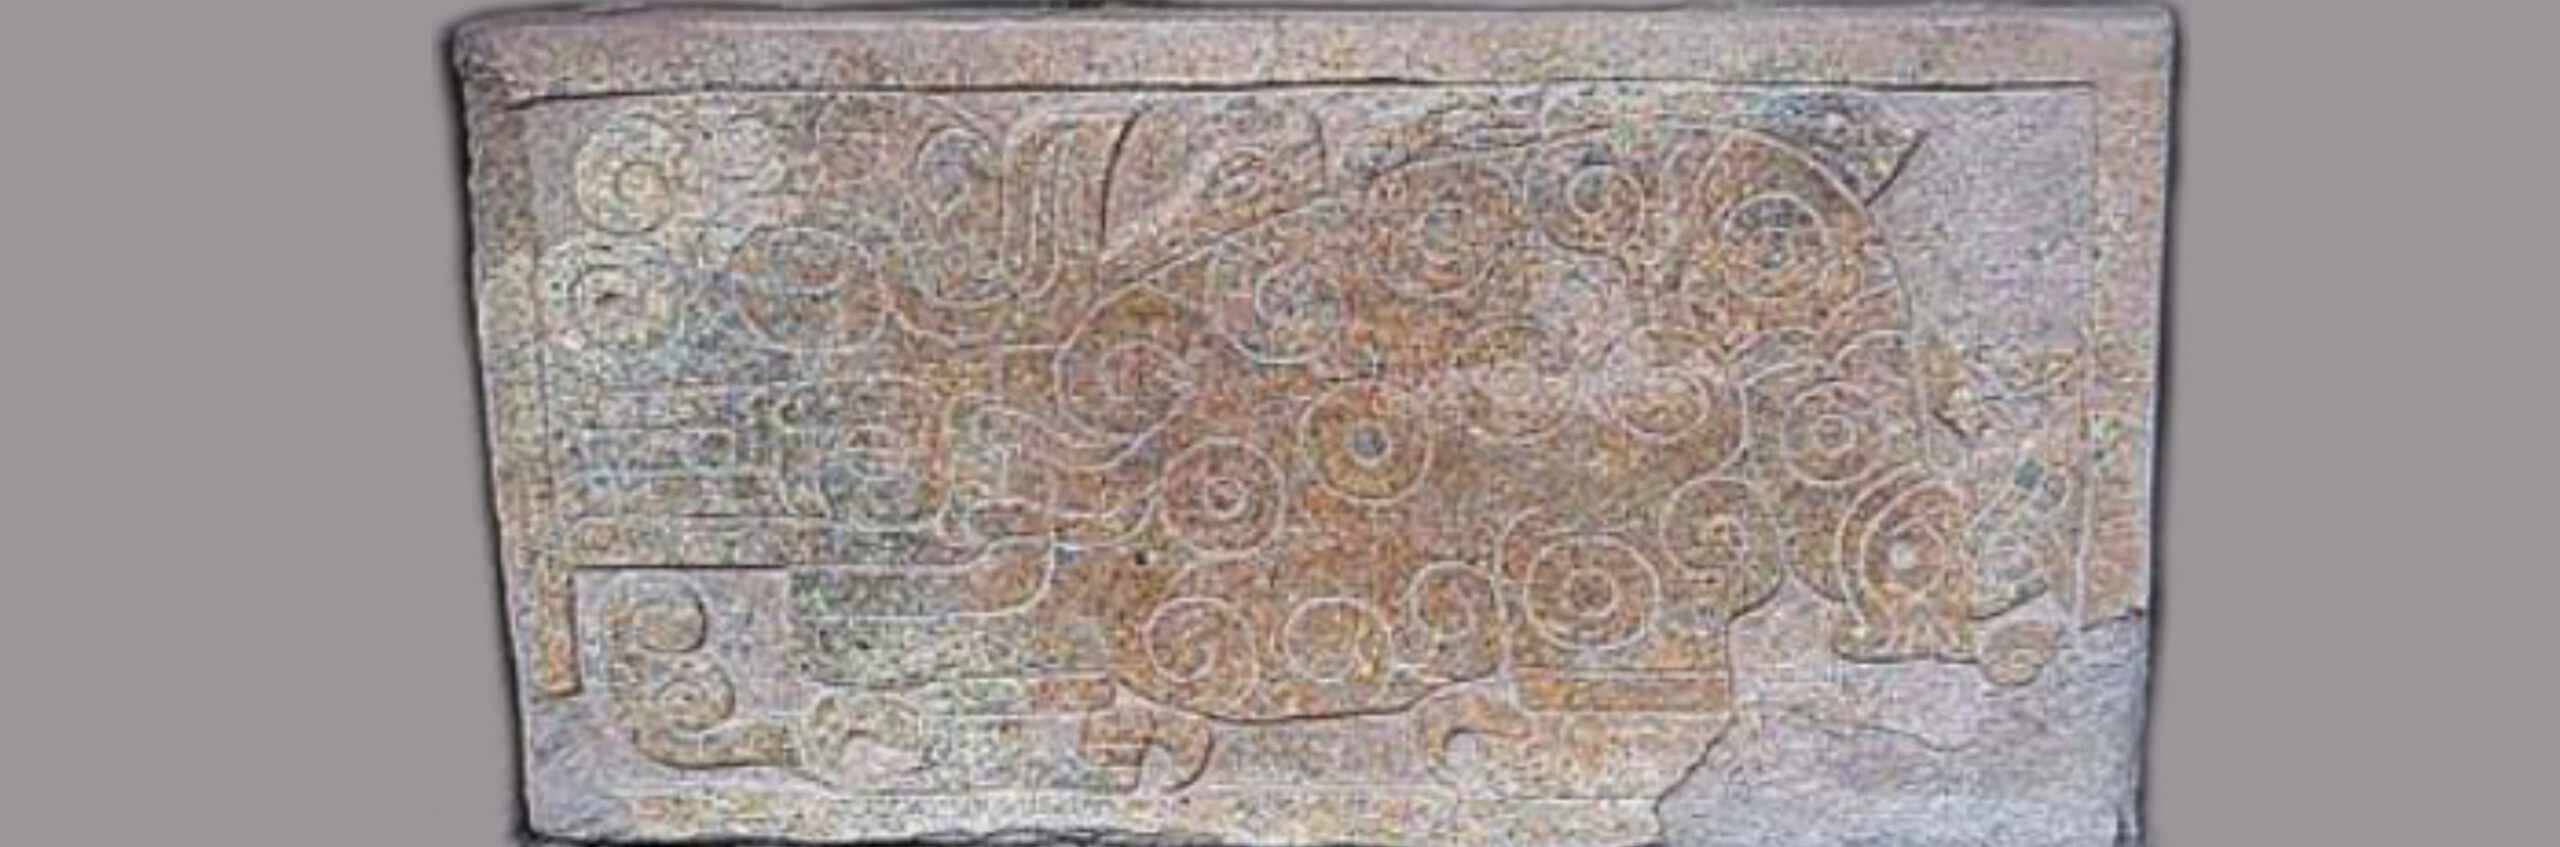 fragment-dun-relief-en-pierre-chavin.jpg